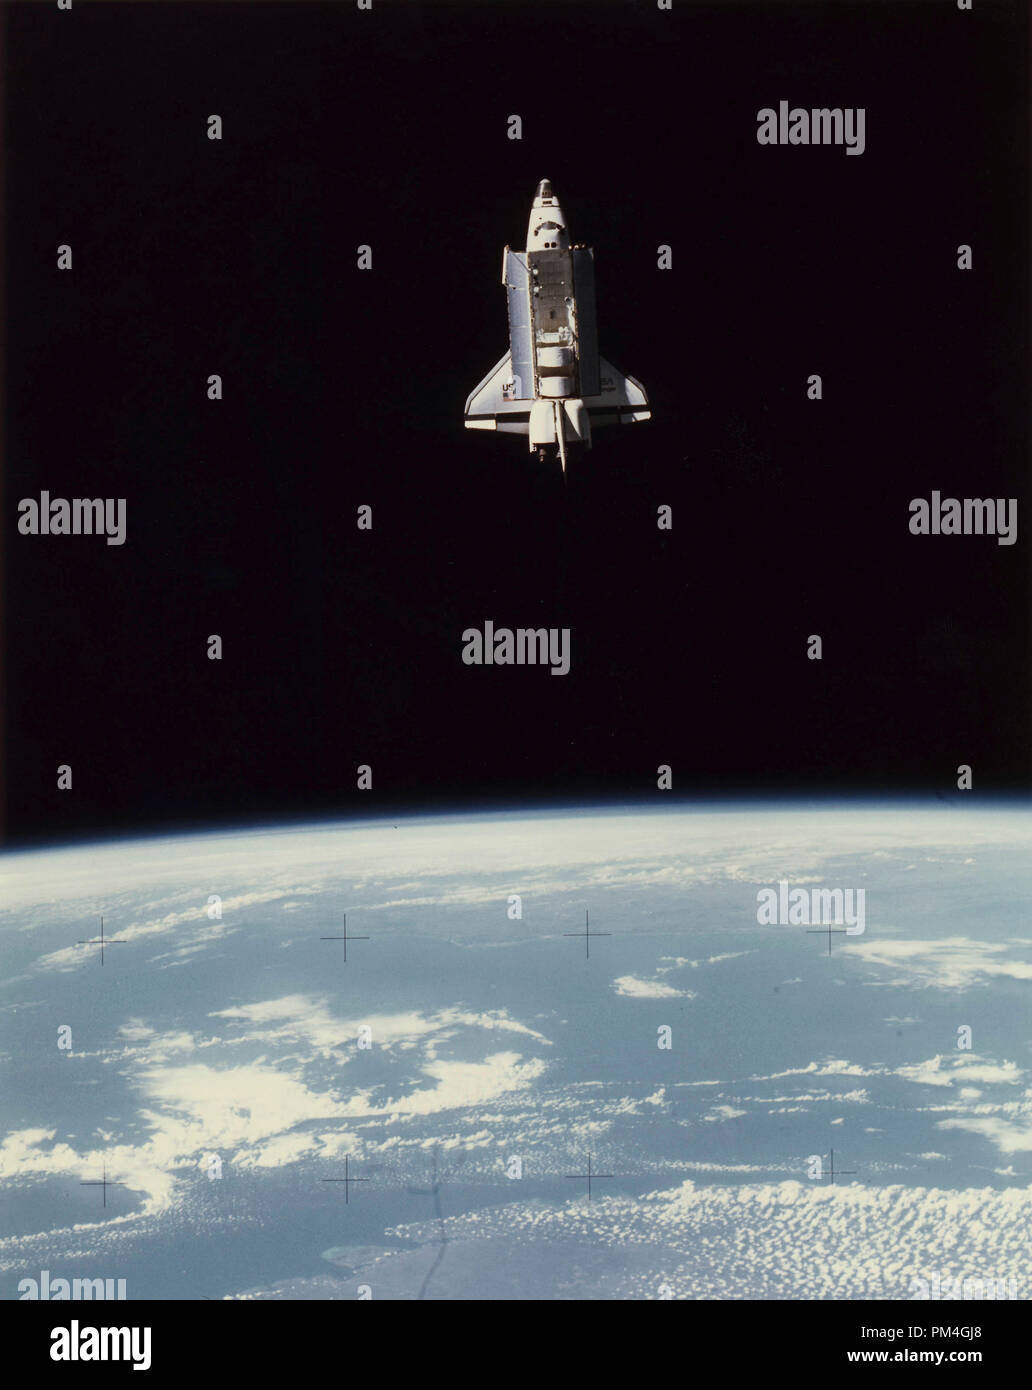 Die Raumfähre Challenger mit einem 70-mm-Kamera an Bord des Shuttle Pallet Satellite, 22. Juni 1983. Datei Referenz Nr. 1003 030 THA Stockfoto